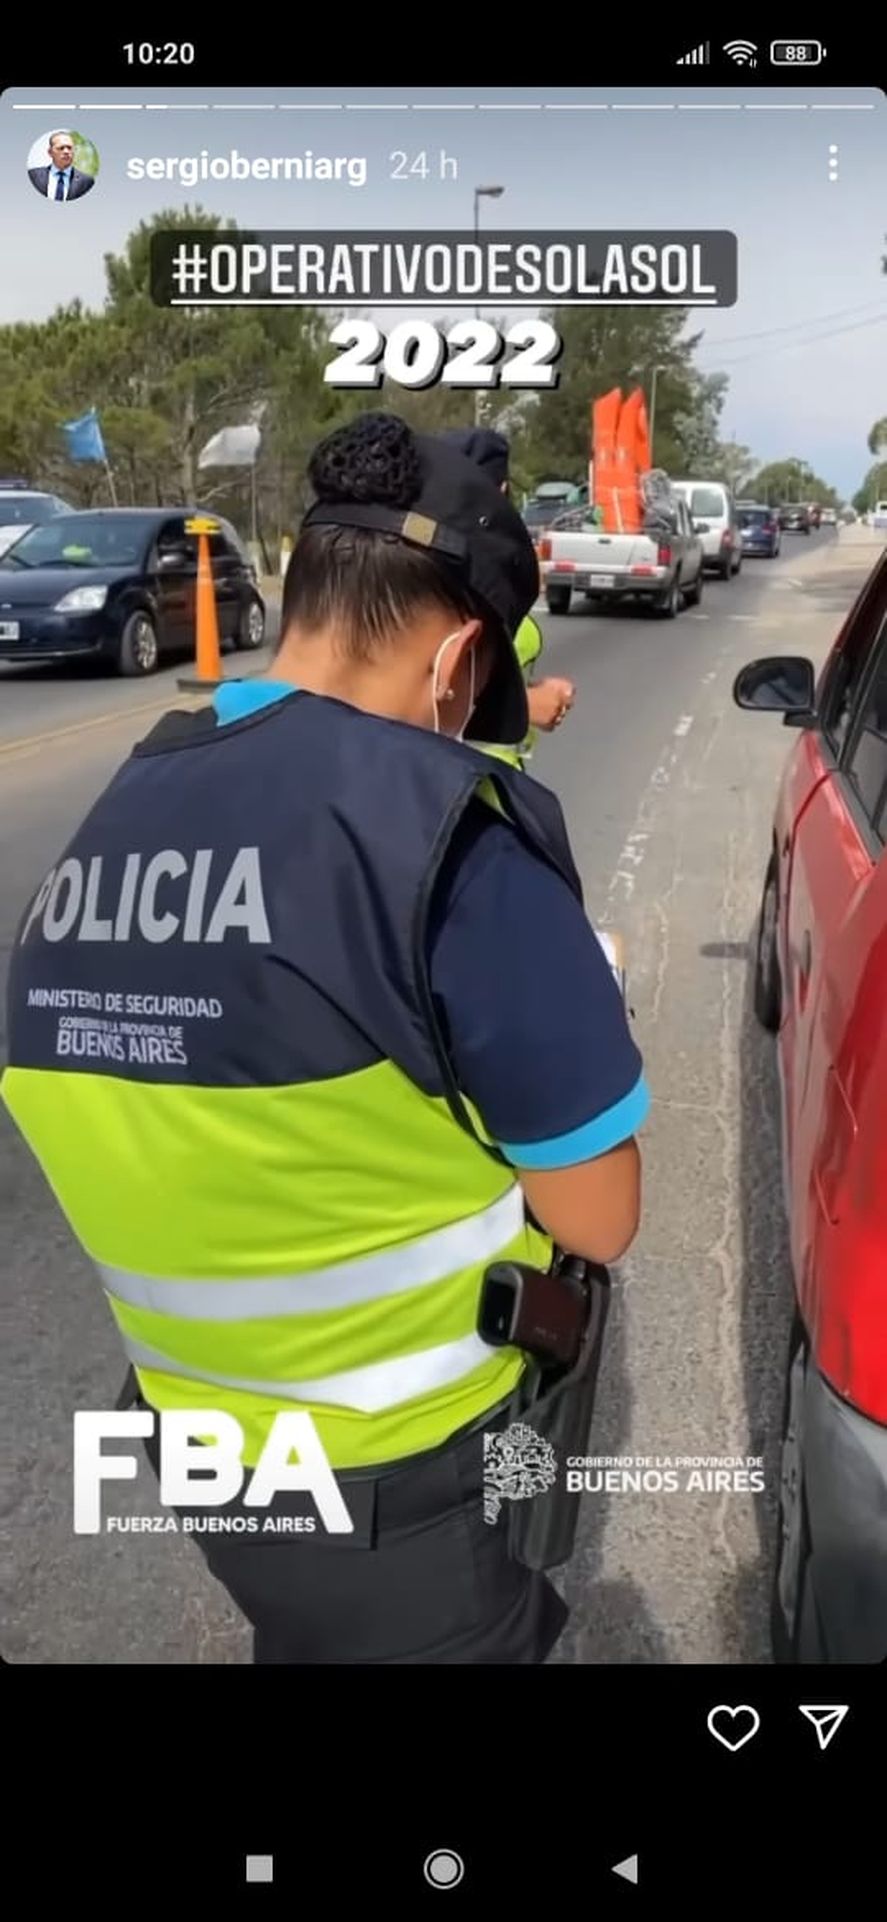 En la publicación, que el propio Sergio Berni subió a su Instagram, se puede ver a una agente de la Policía Bonaerense sin el cargador en la pistola reglamentaria.